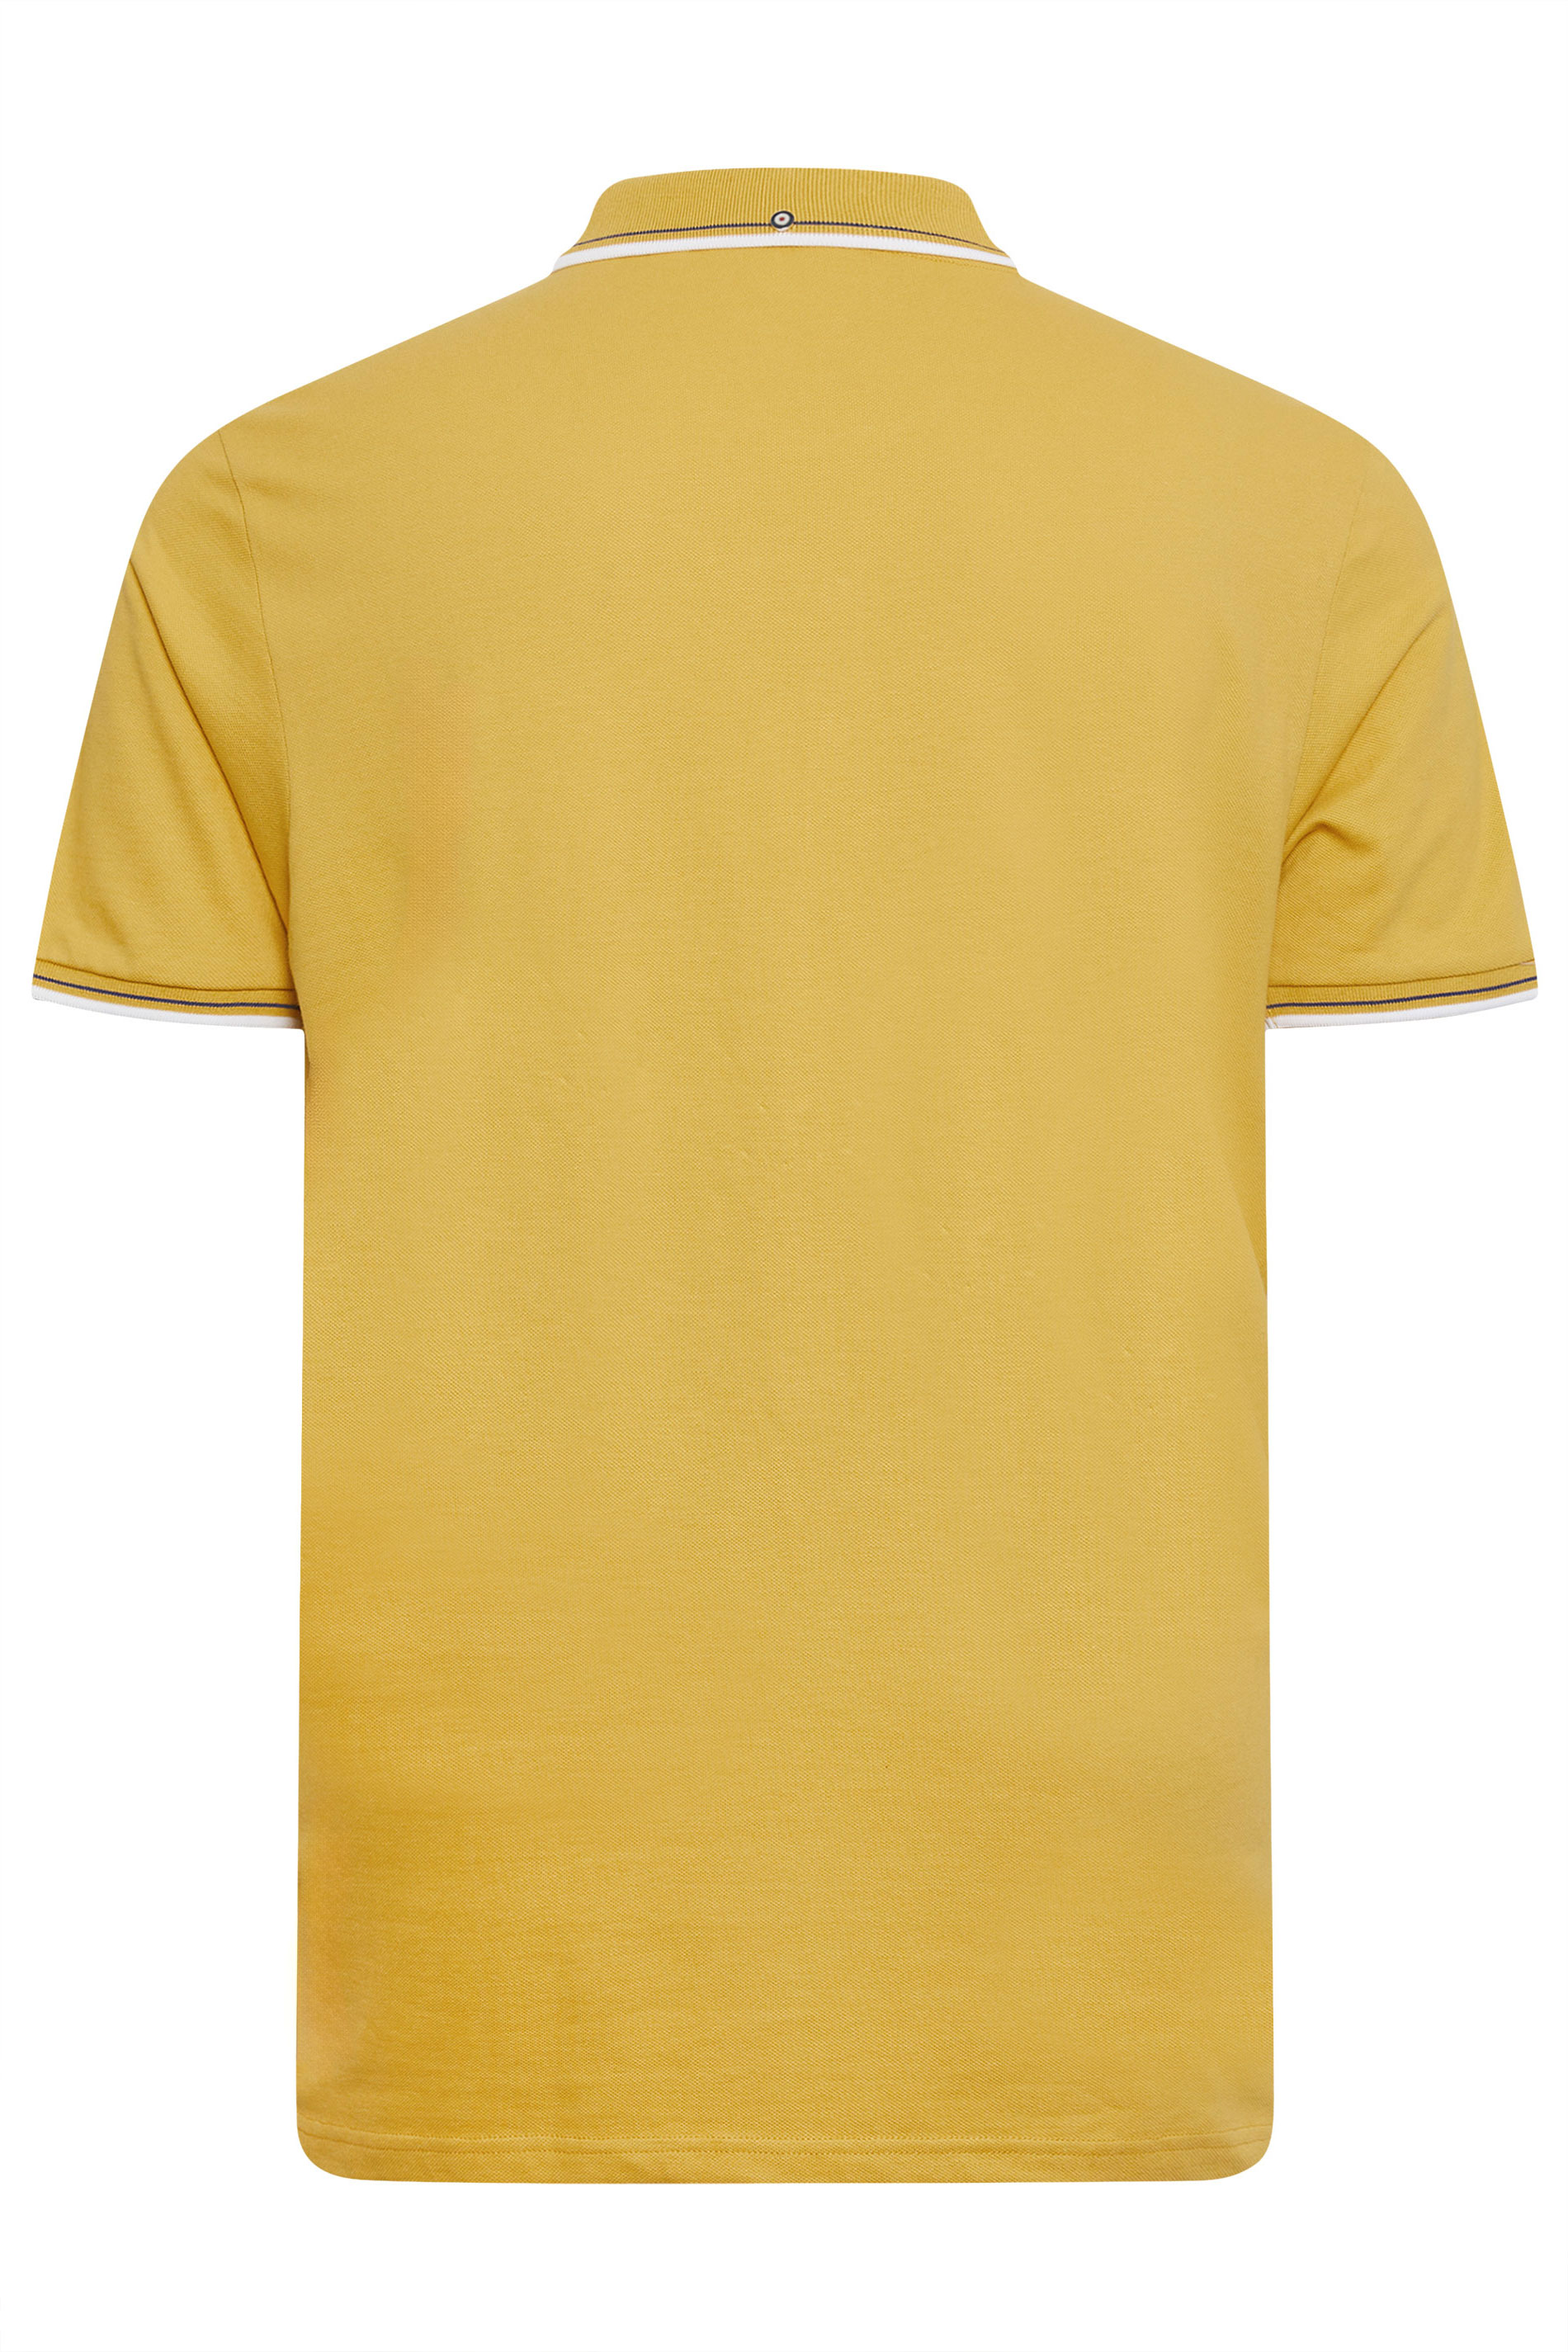 BEN SHERMAN Big & Tall Yellow Tipped Polo Shirt | BadRhino 3